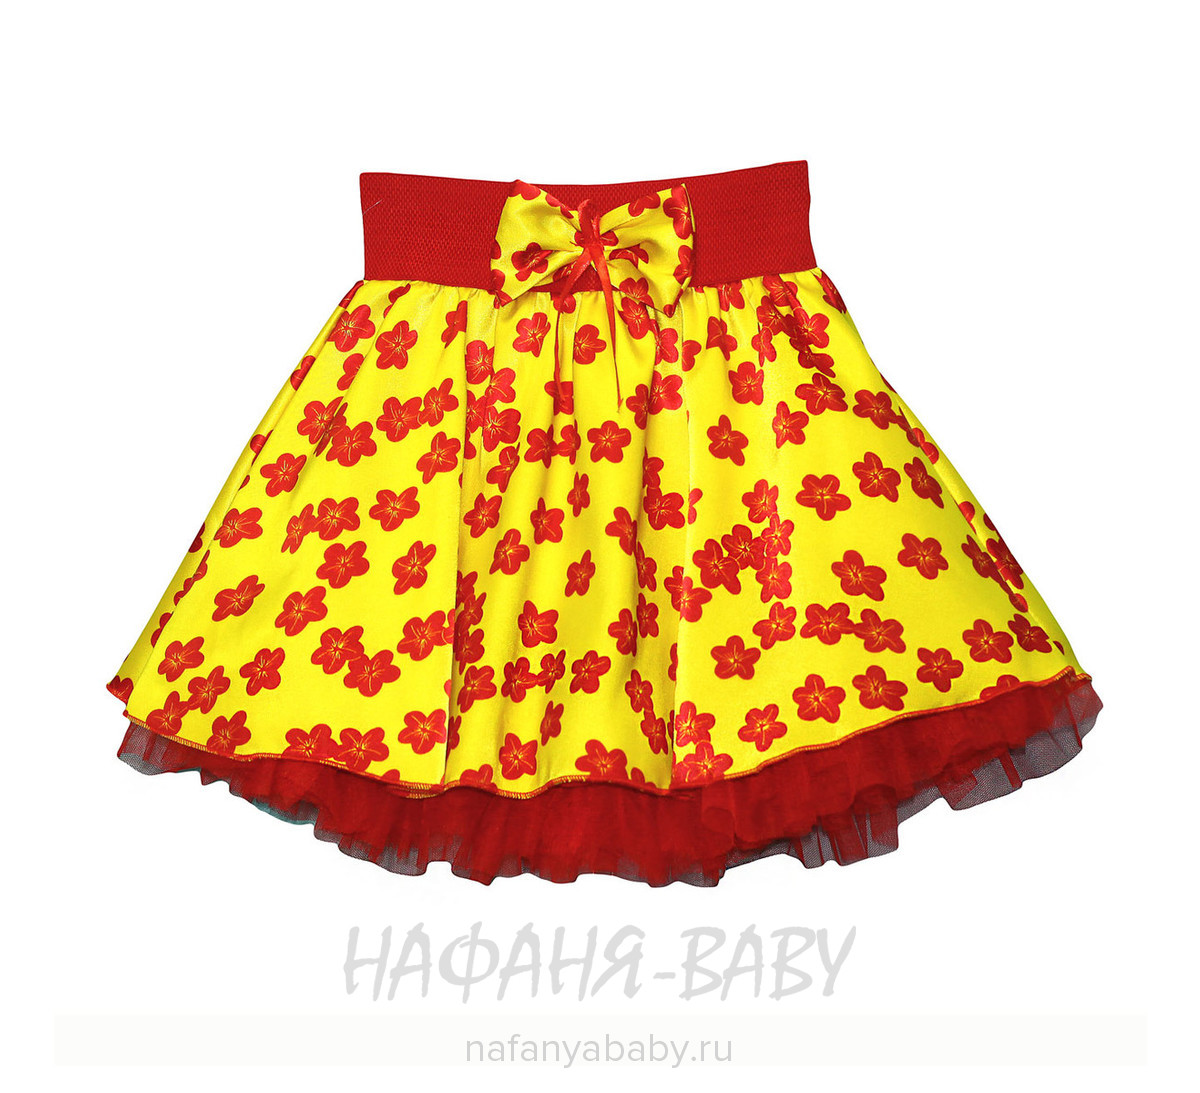 Детская юбка KGMART, купить в интернет магазине Нафаня. арт: 0891.